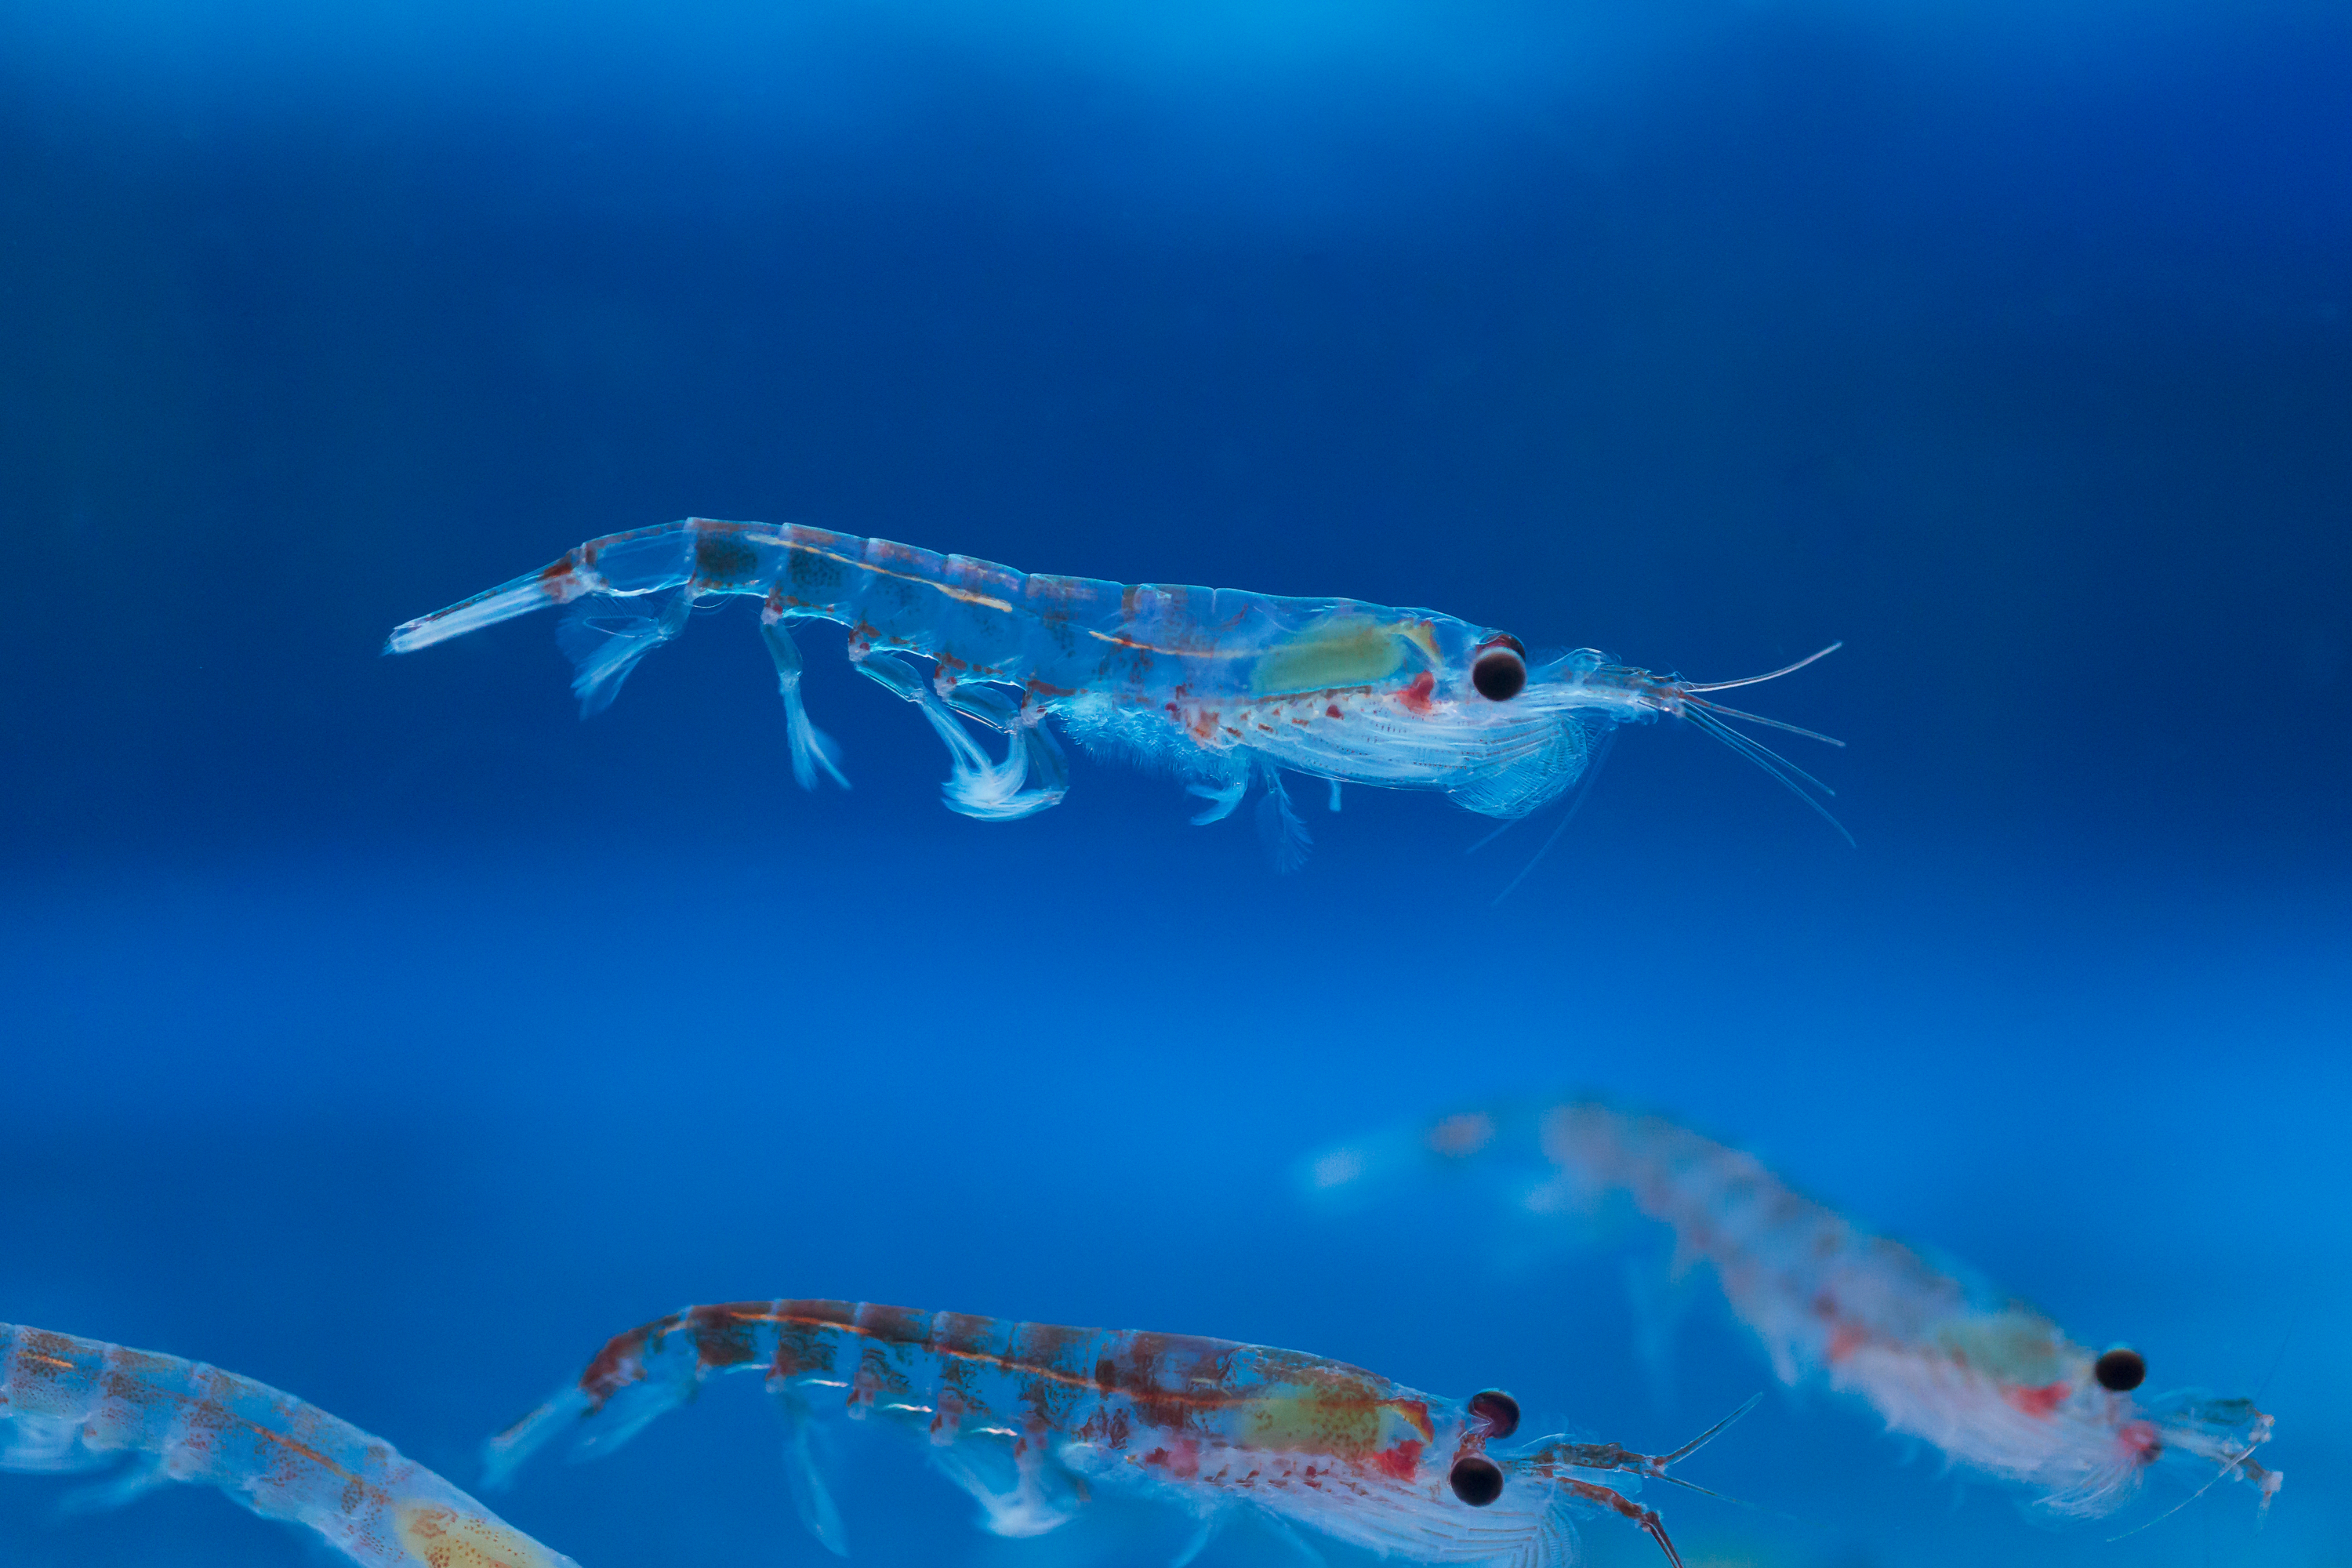 Krill specimen in blue water